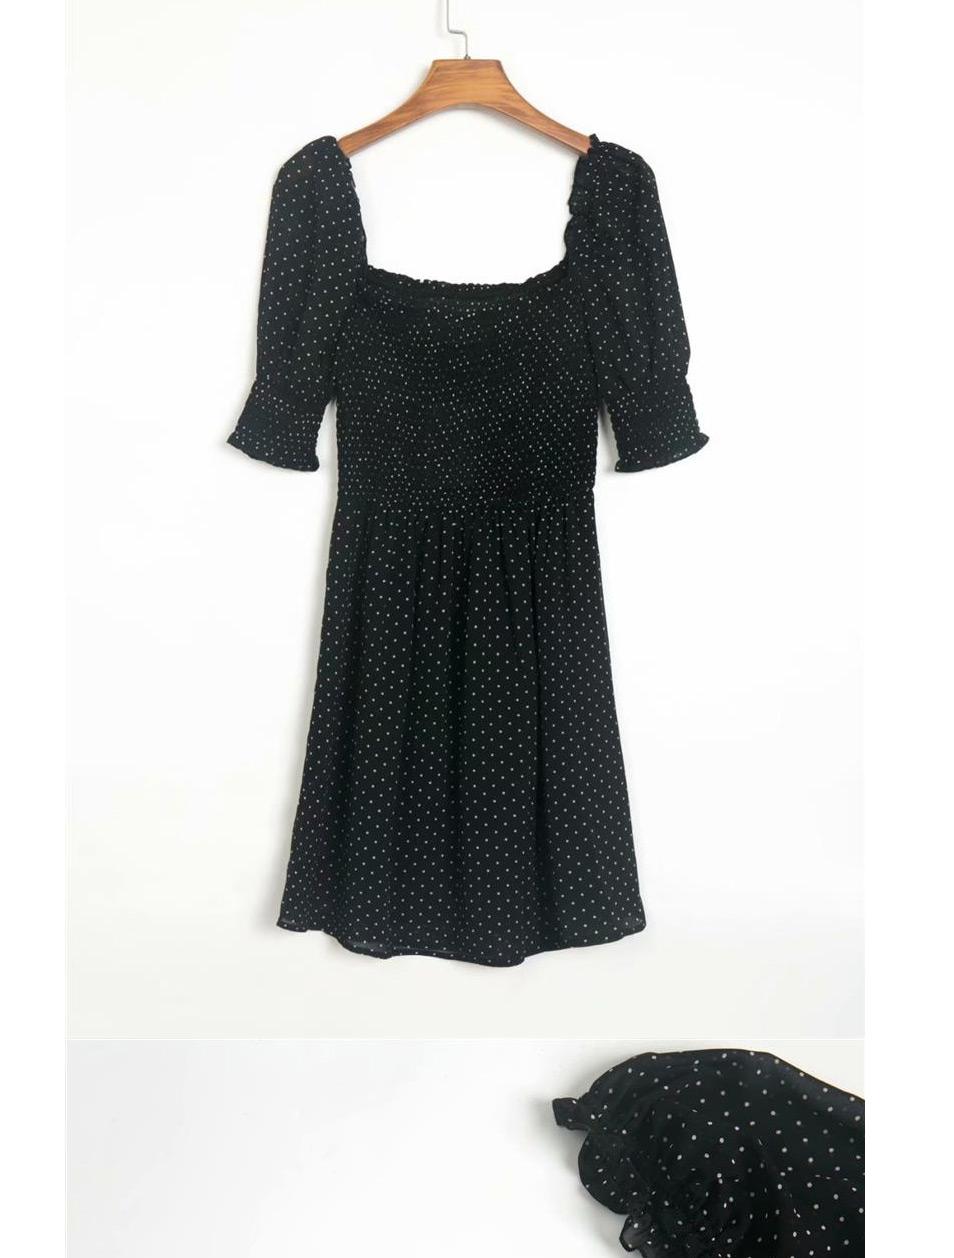 Fashion Black Polka Dot Dress,Long Dress